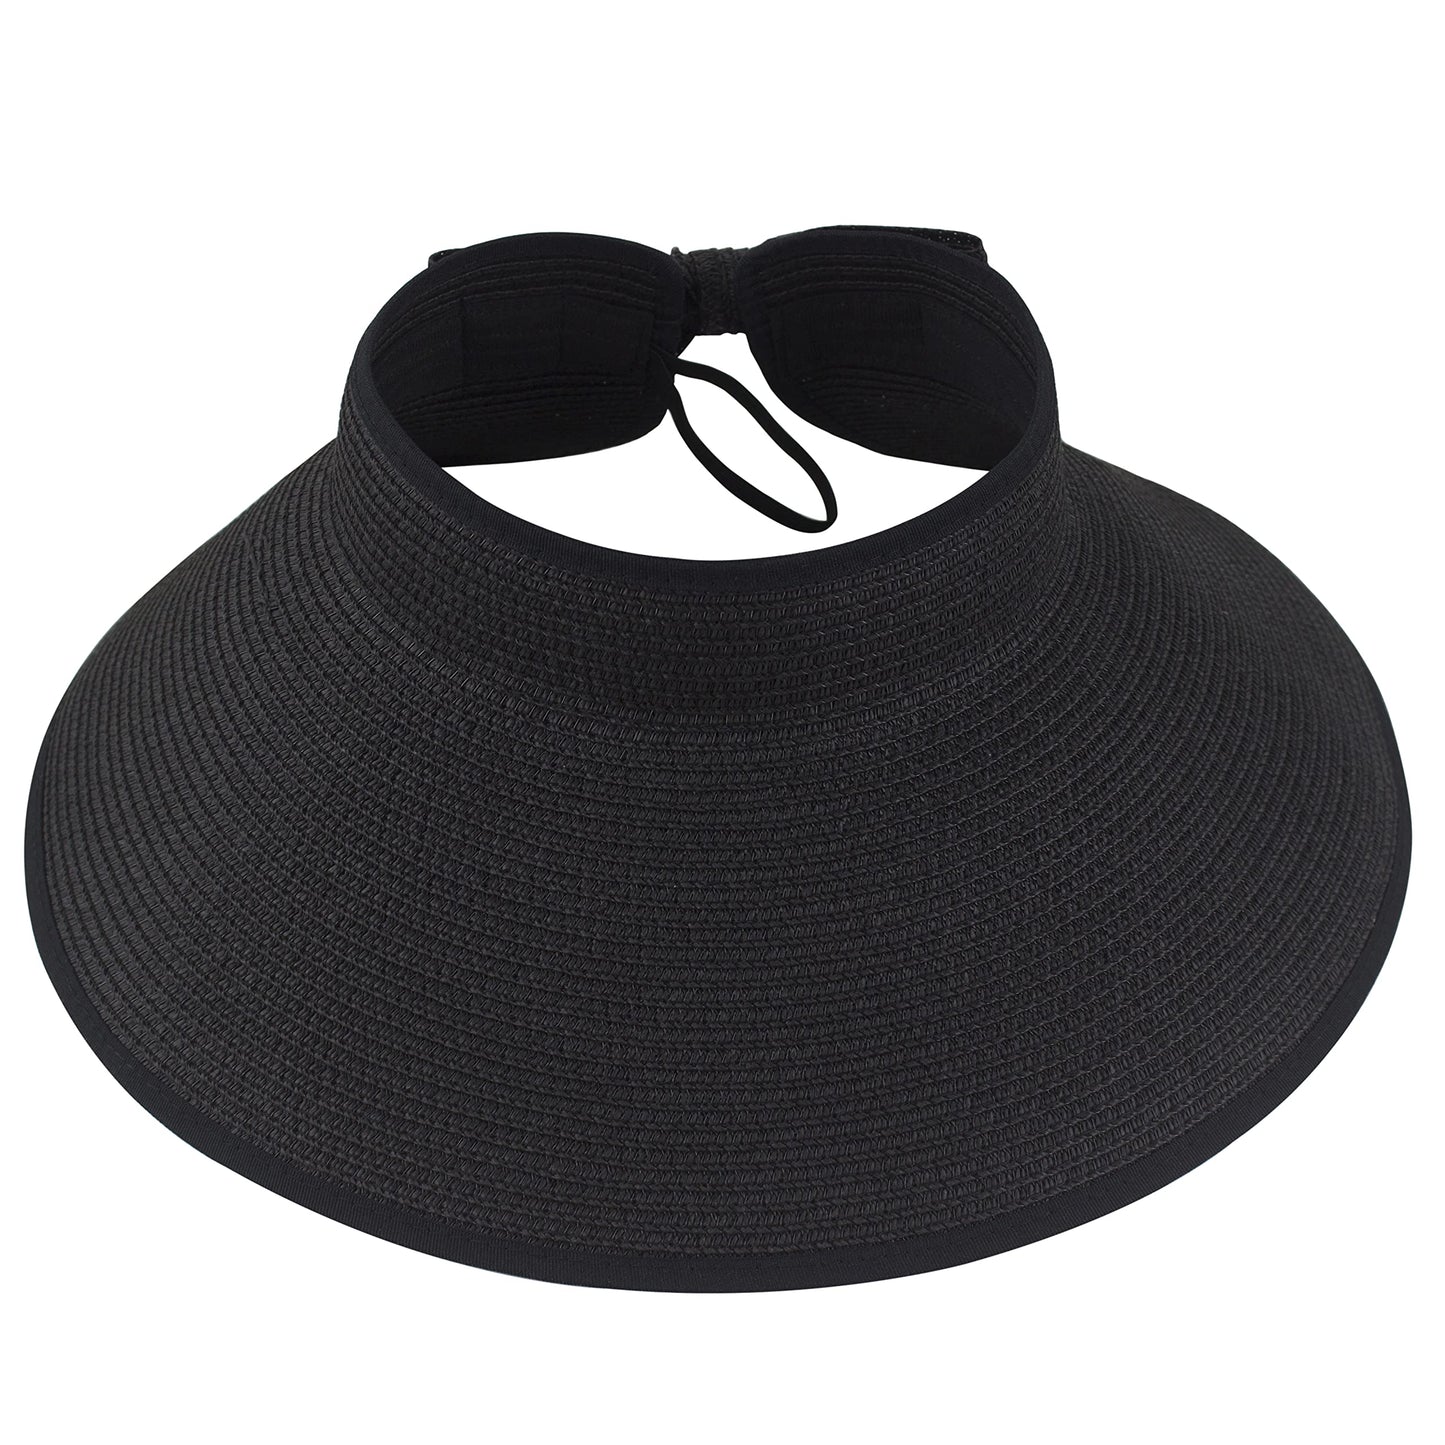 Pleciony kapelusz typu daszek Mattie - Czarny / Uniwersalny